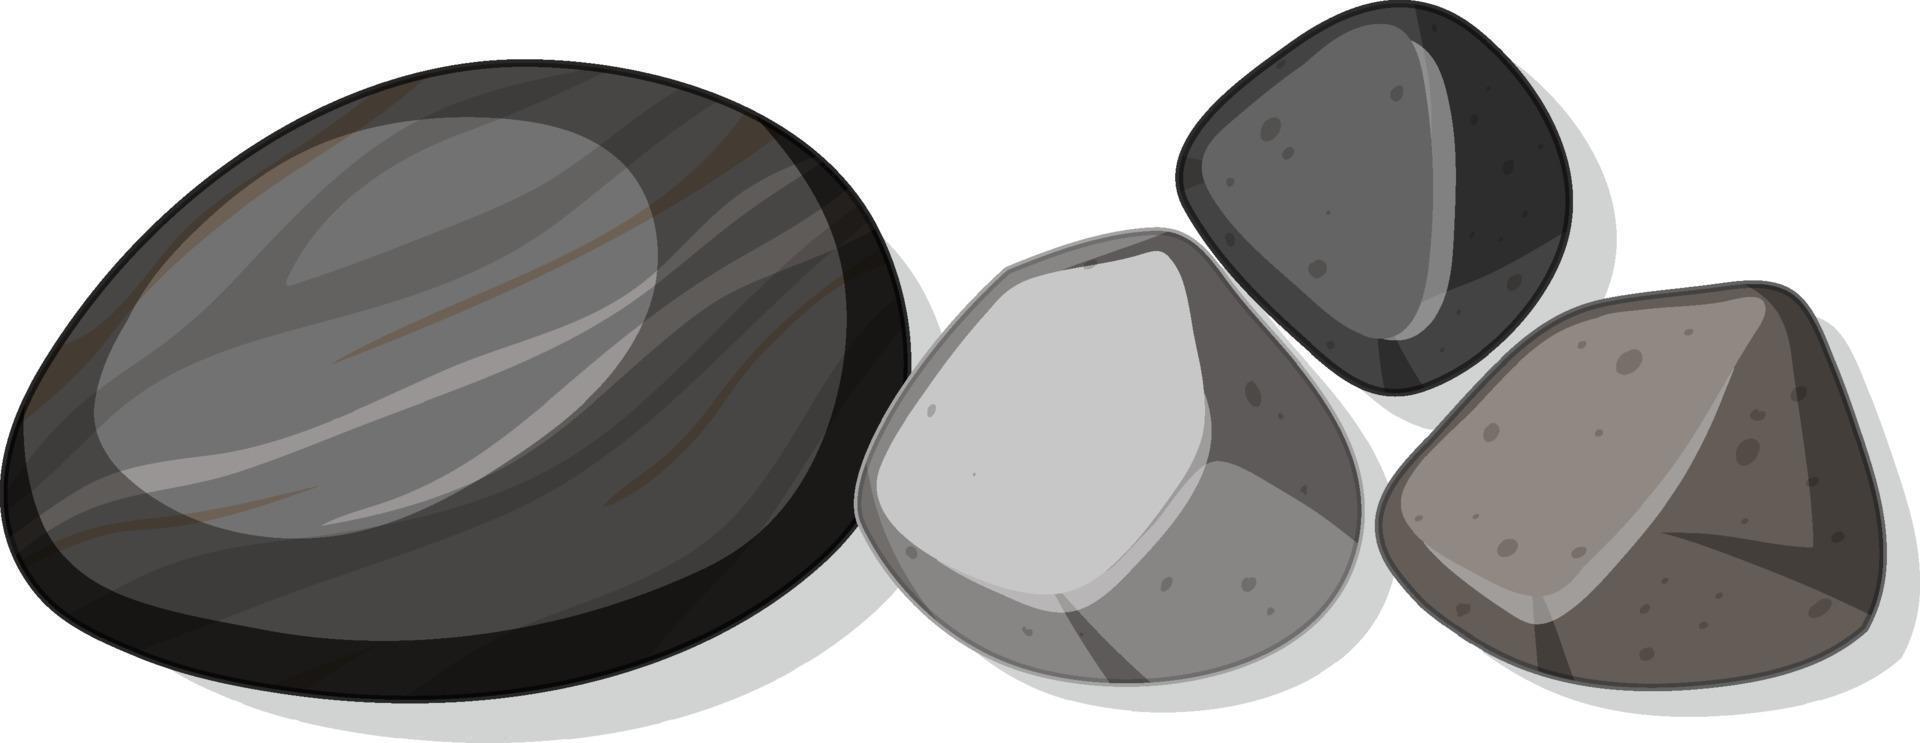 set van verschillende zwarte stenen geïsoleerd op een witte achtergrond vector